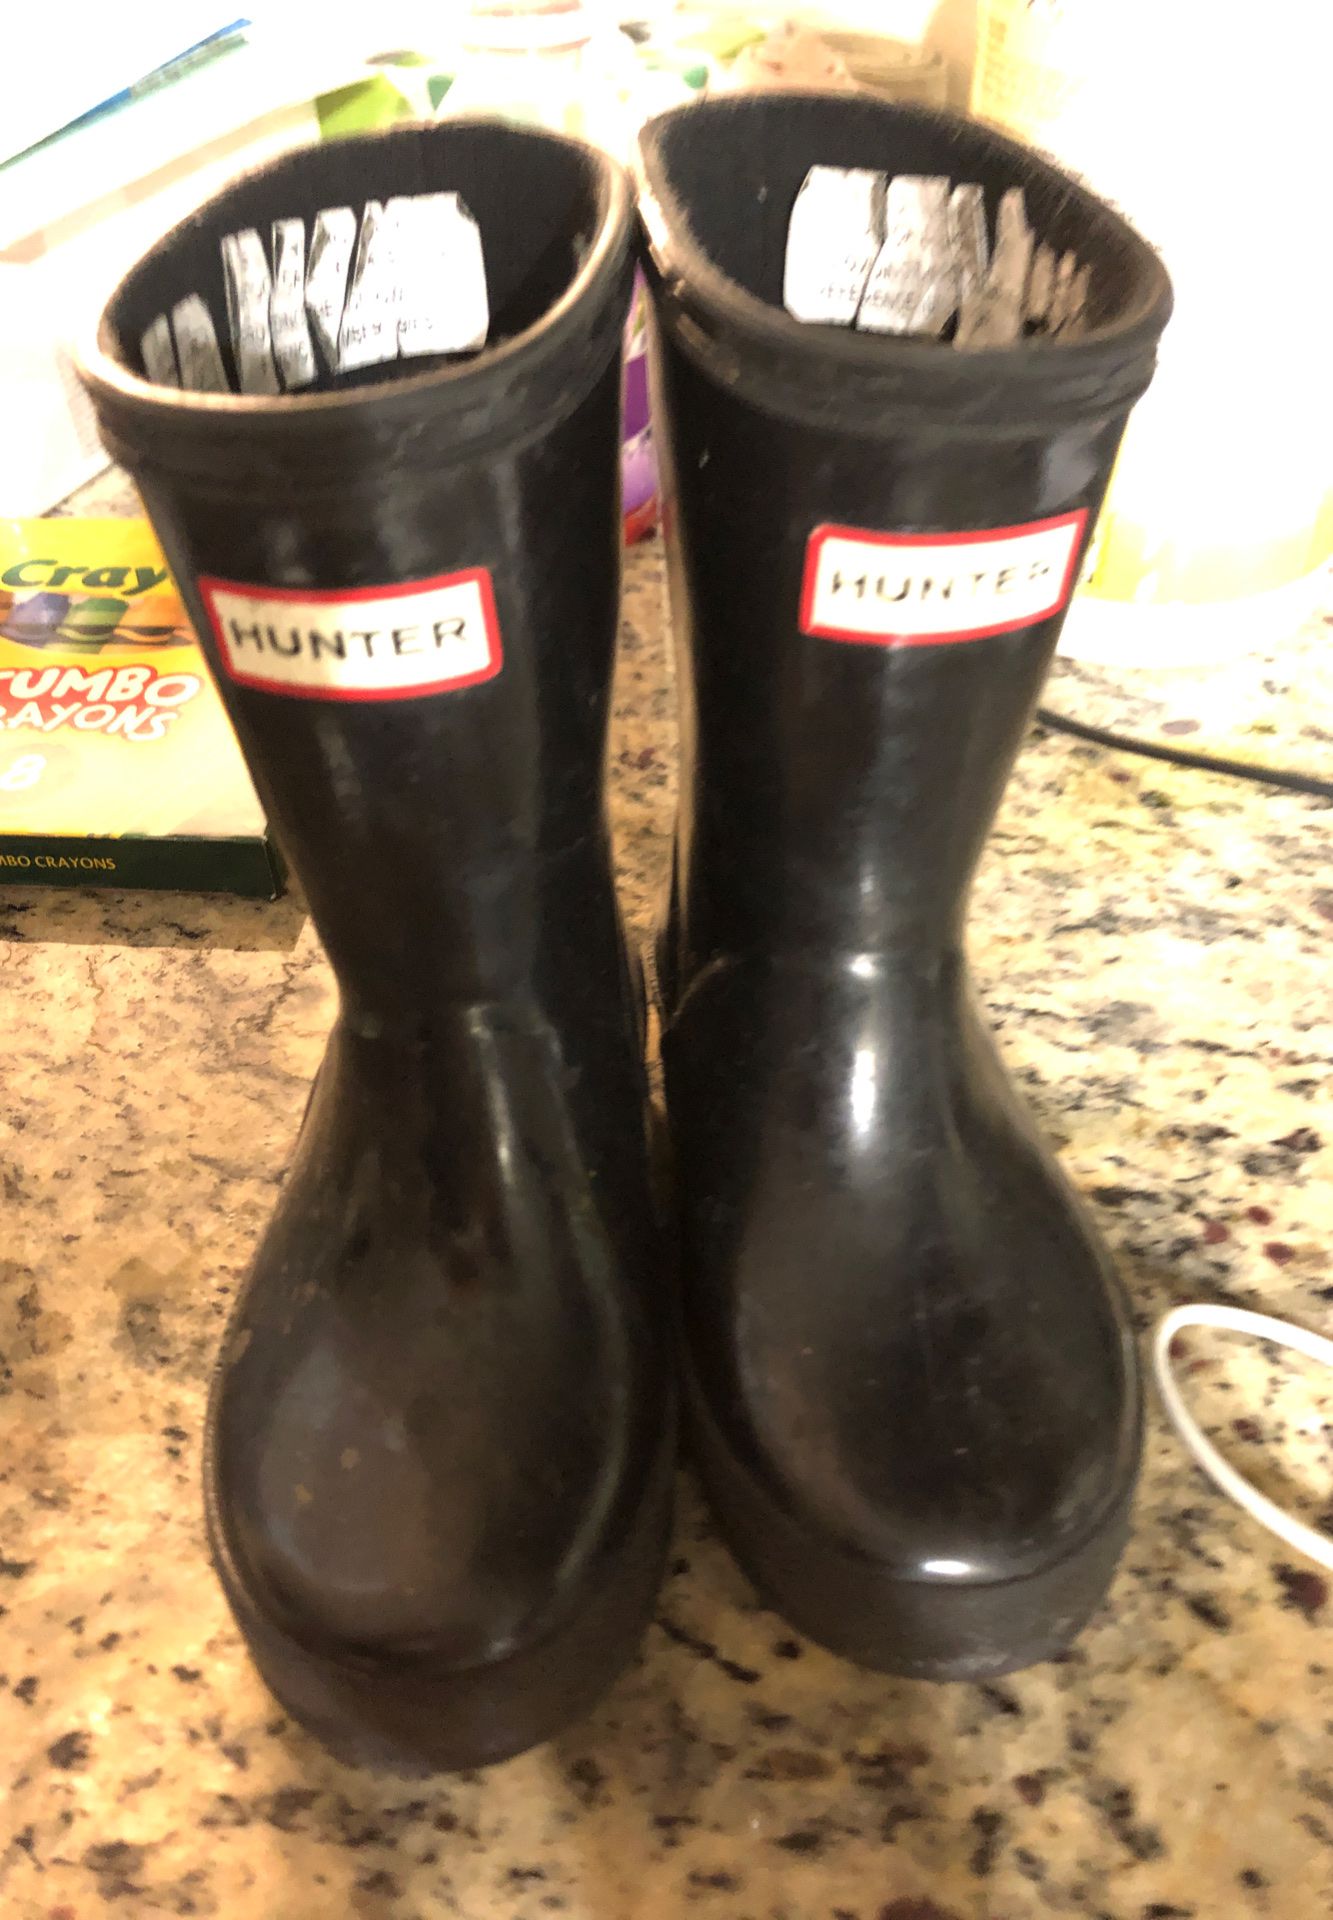 HUNTER rain boots